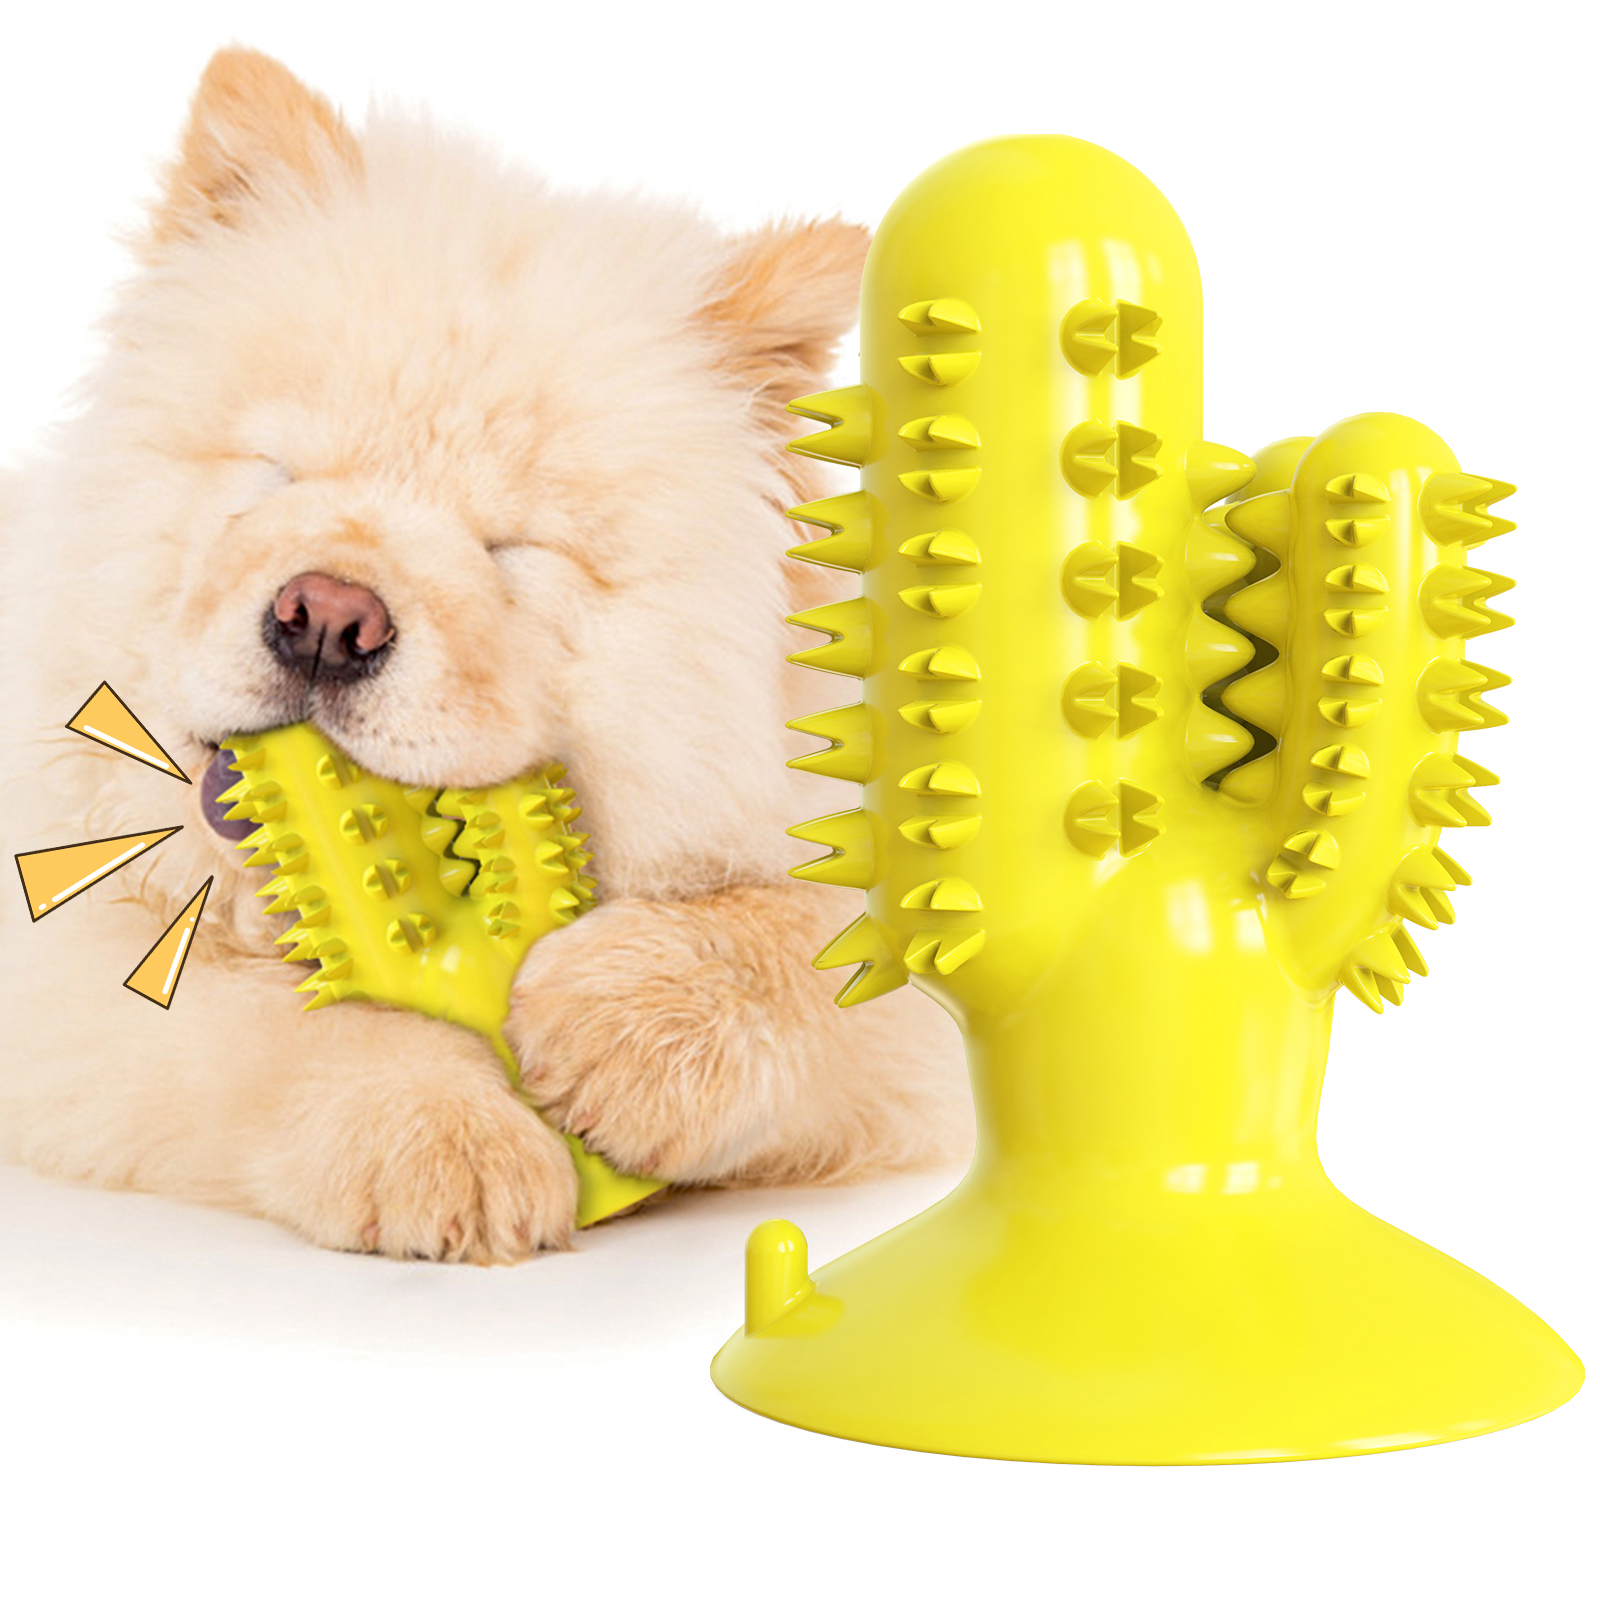 2020 Նոր դիզայնի կակտուսի ձևի ճռճռացող շան ատամի խոզանակ ներծծող բաժակ լակոտ շան ծամելու խաղալիքներ